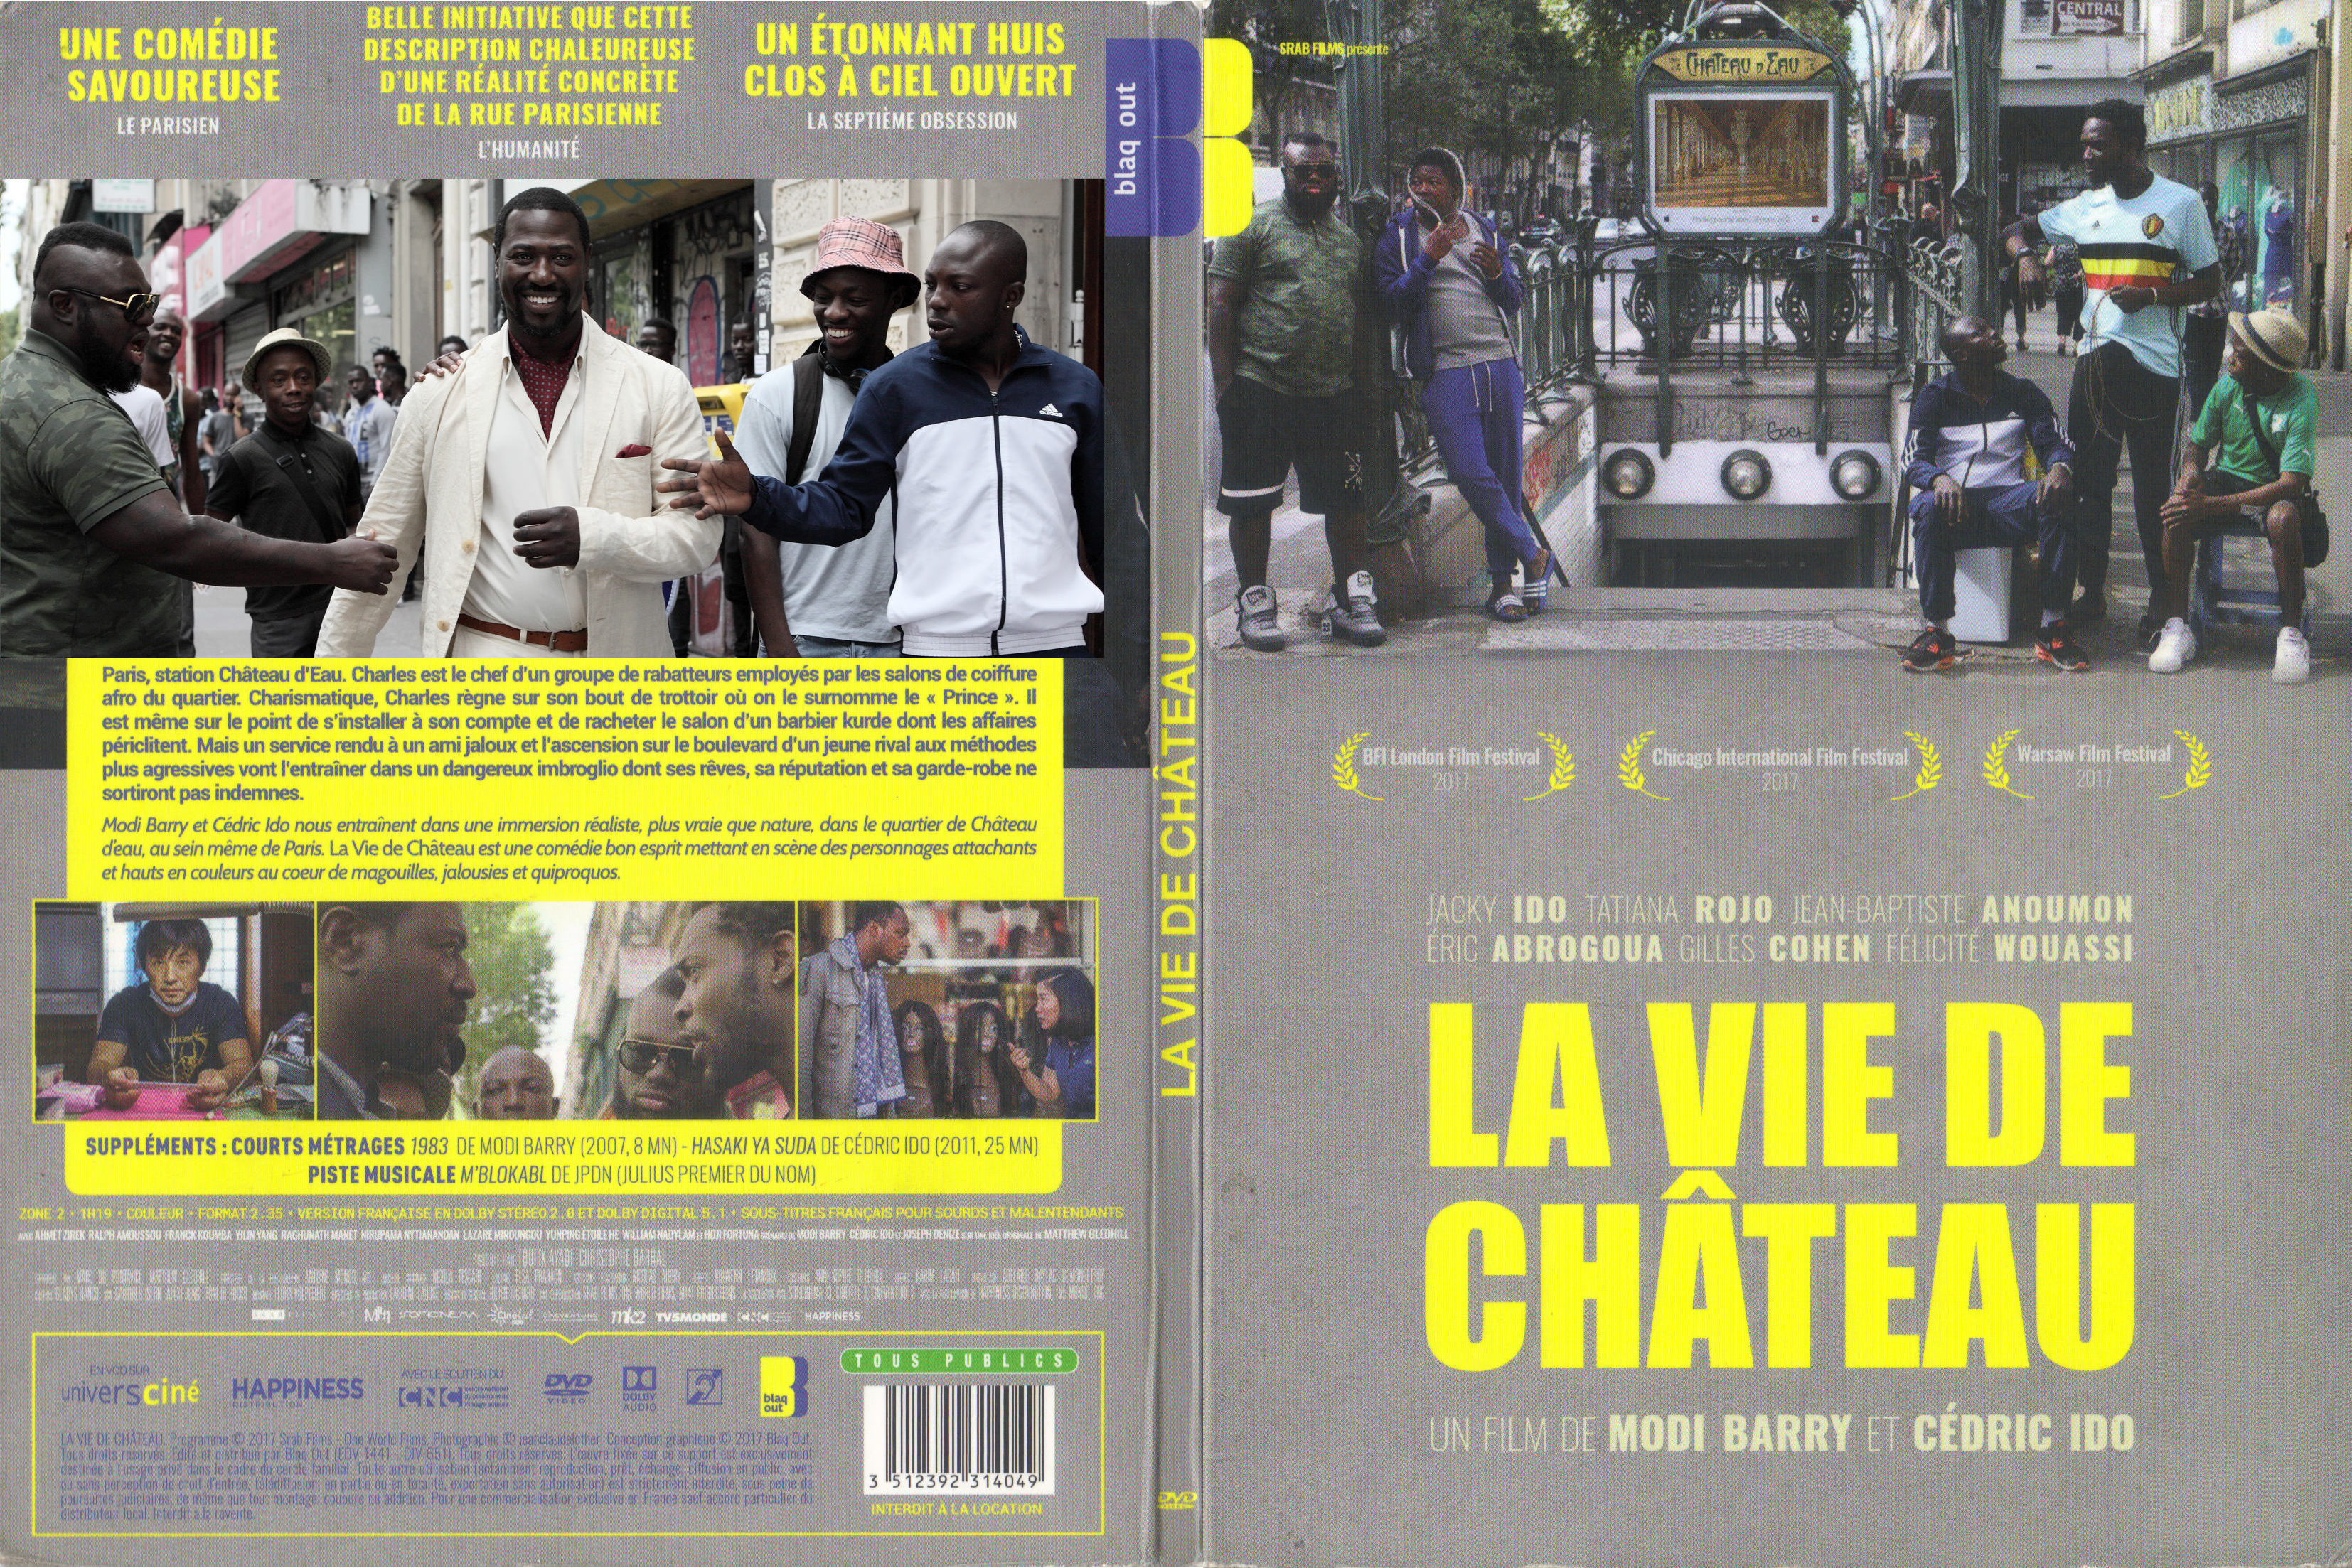 Jaquette DVD La vie de chateau (2017)